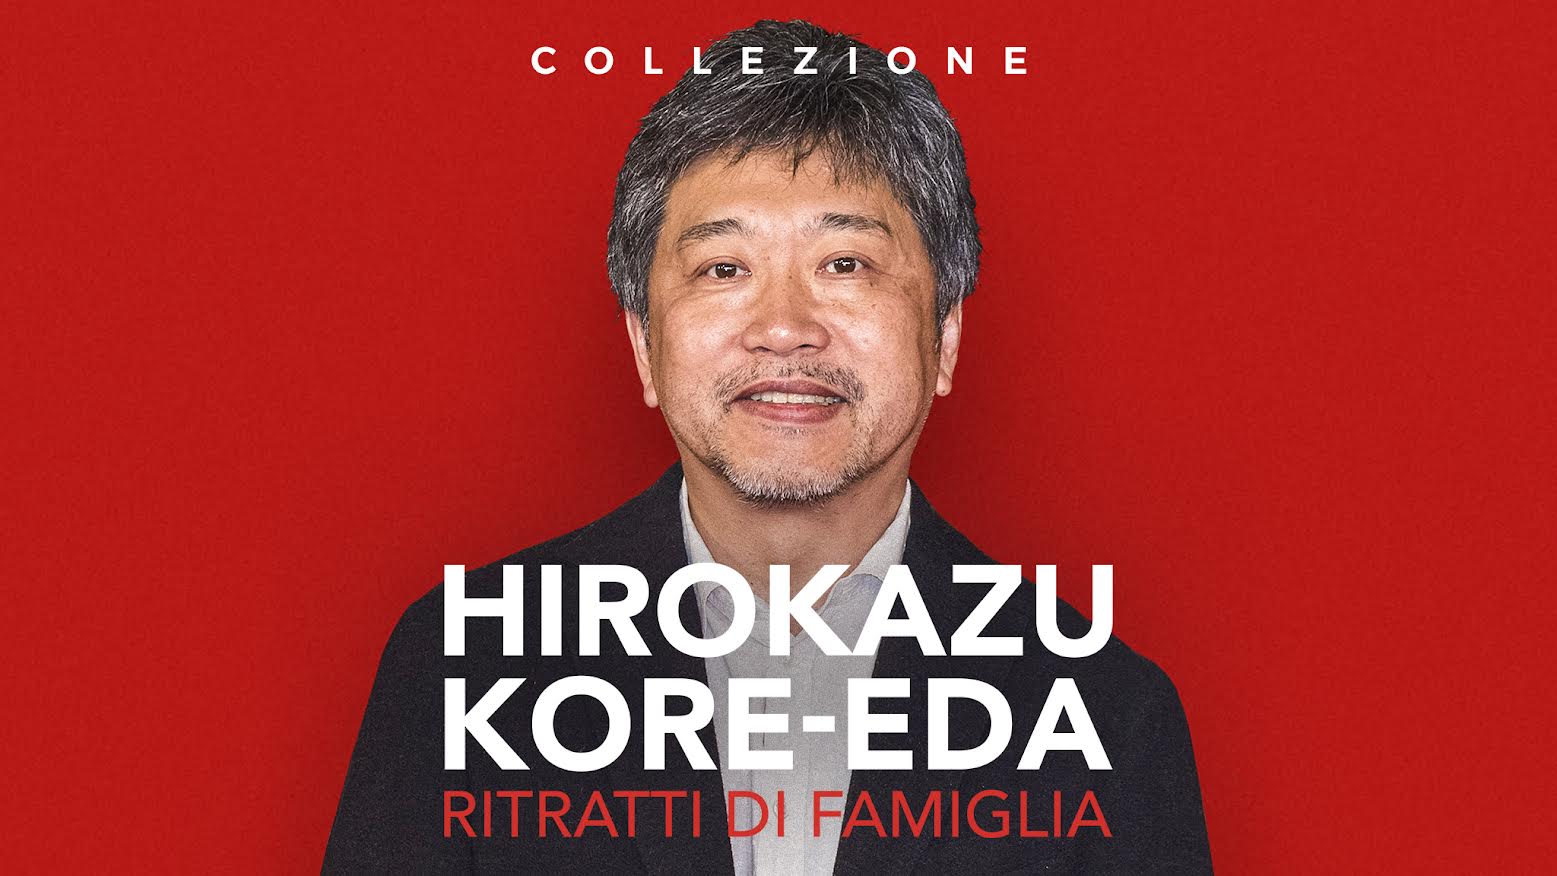 Hirokazu Kore-eda: su RaiPlay arriva Ritratti di famiglia, una collezione del grande regista giapponese